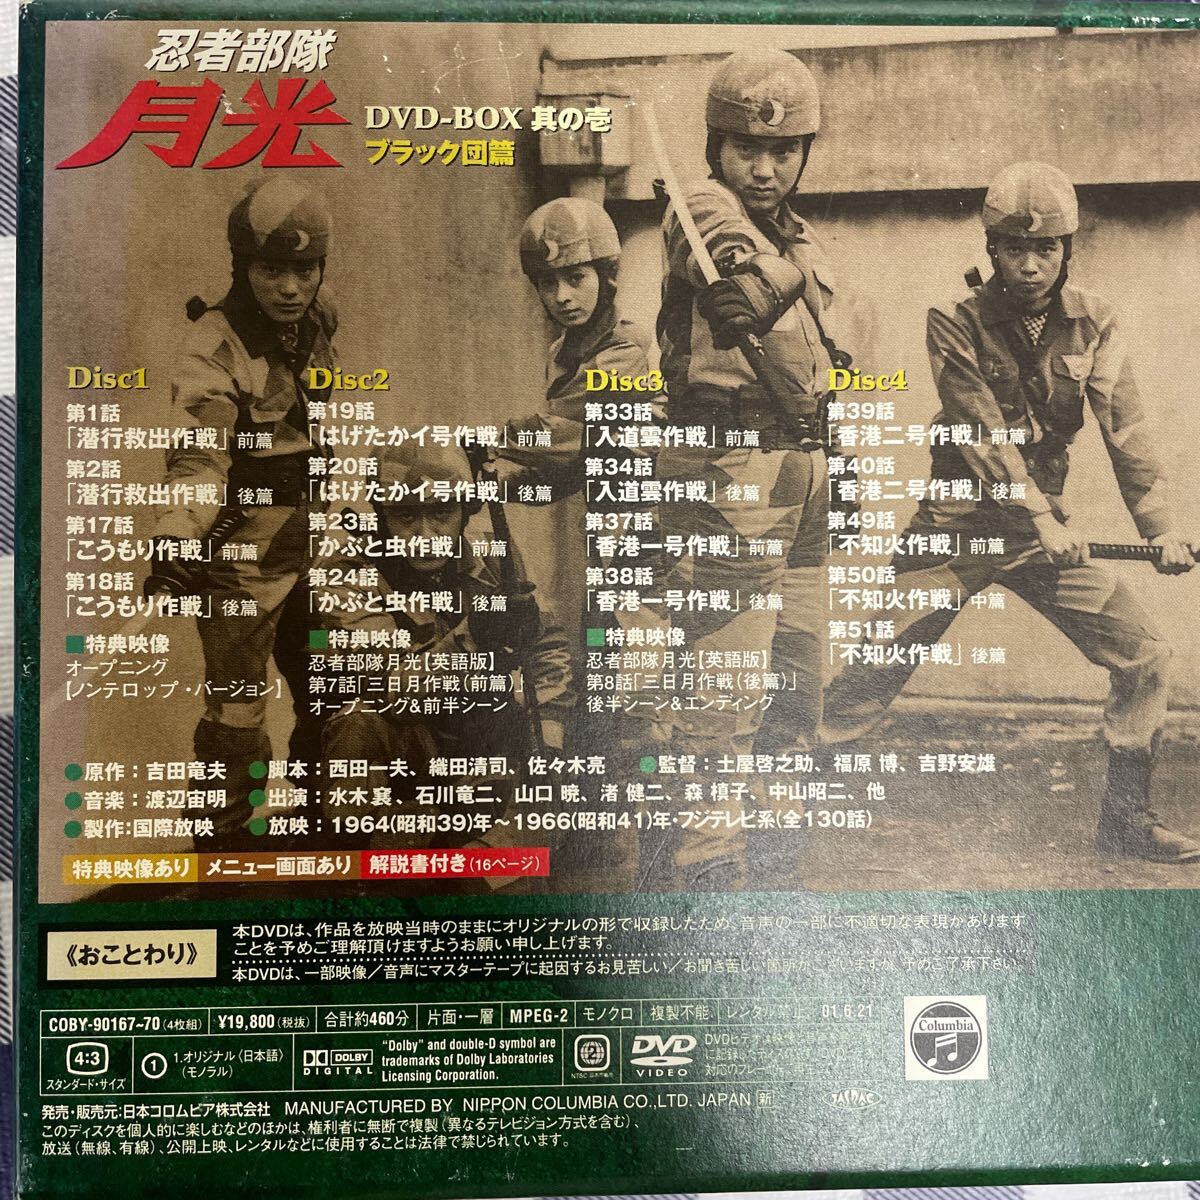 忍者部隊月光DVD BOX其壱ブラック団篇の画像5